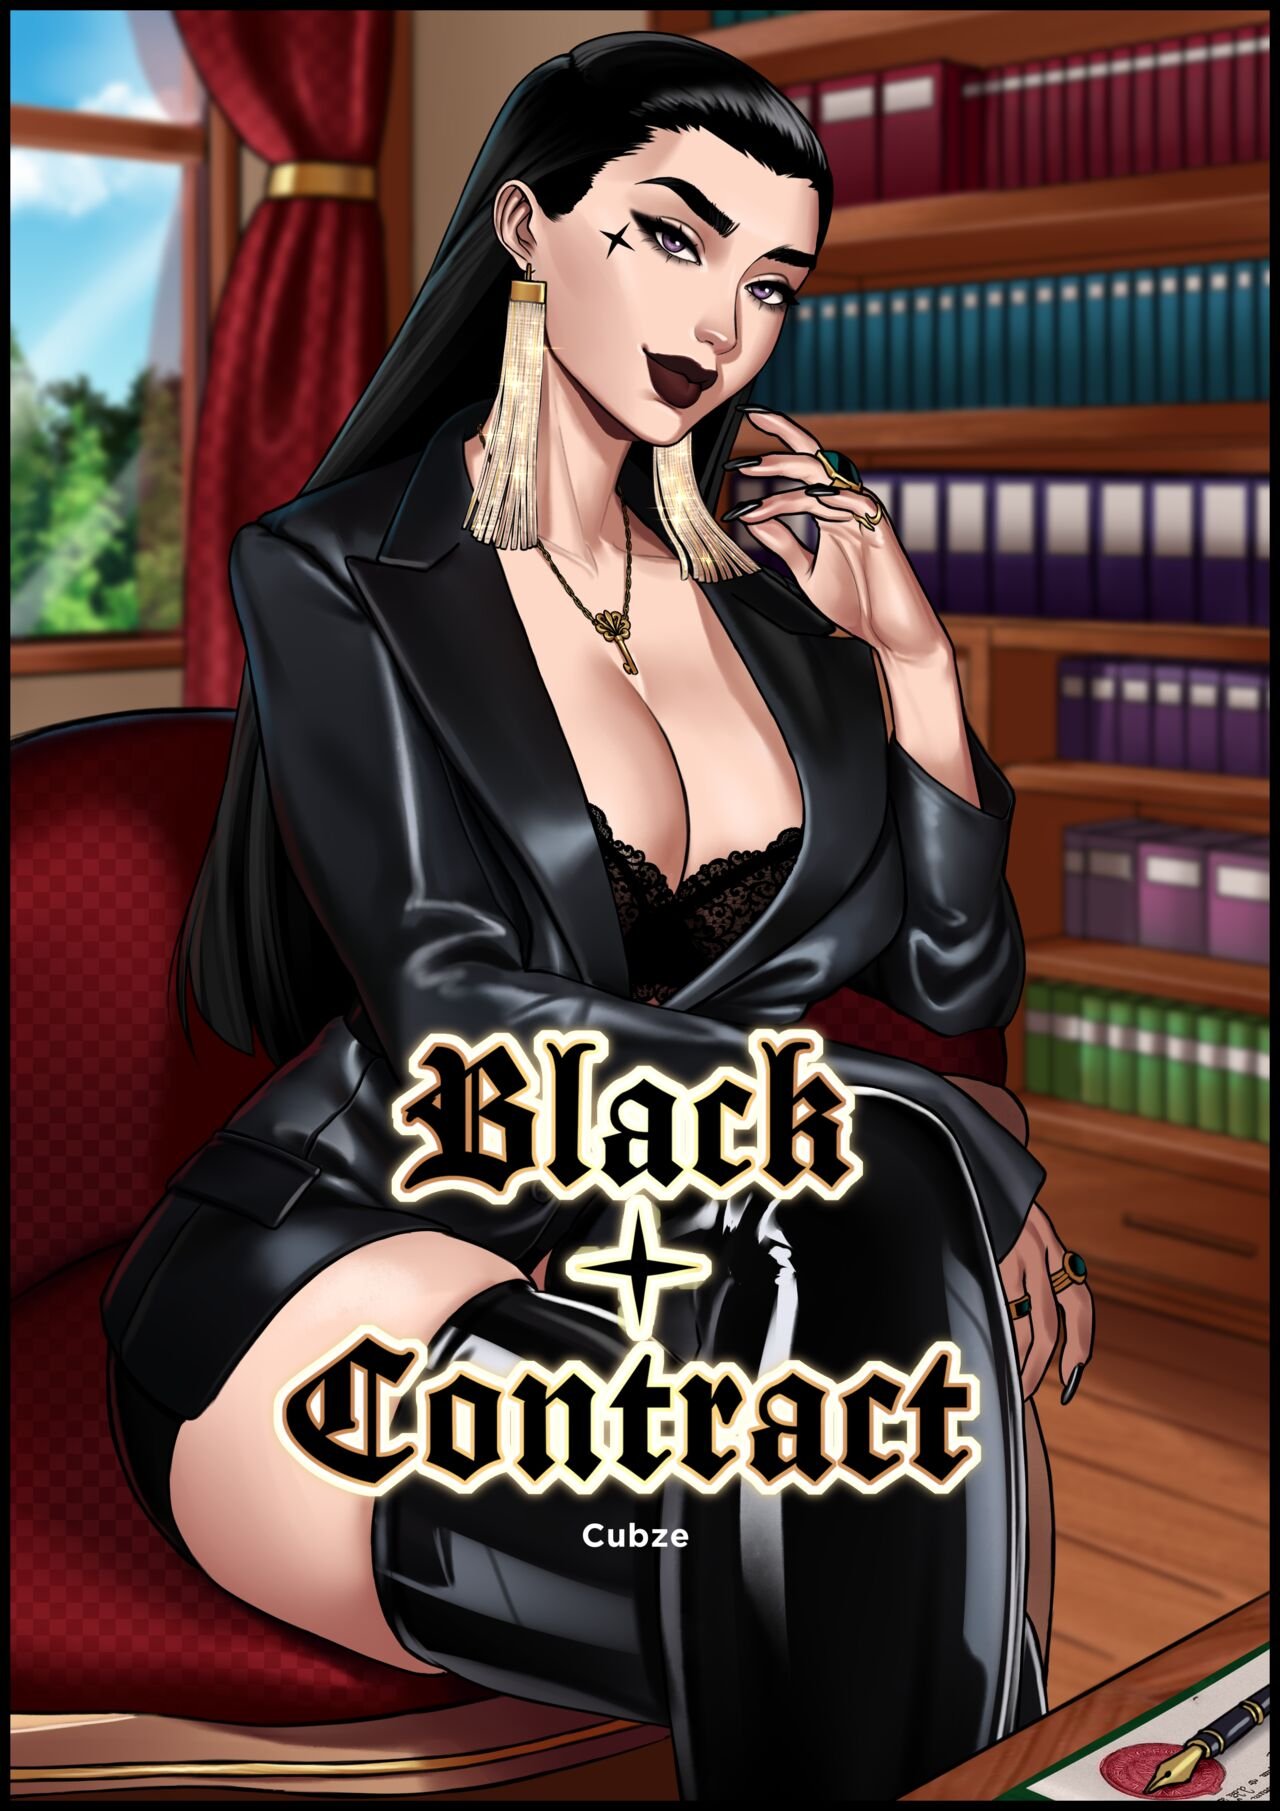 Female Domination Porn Comics - Otto Cubze - Black Contract porn comic